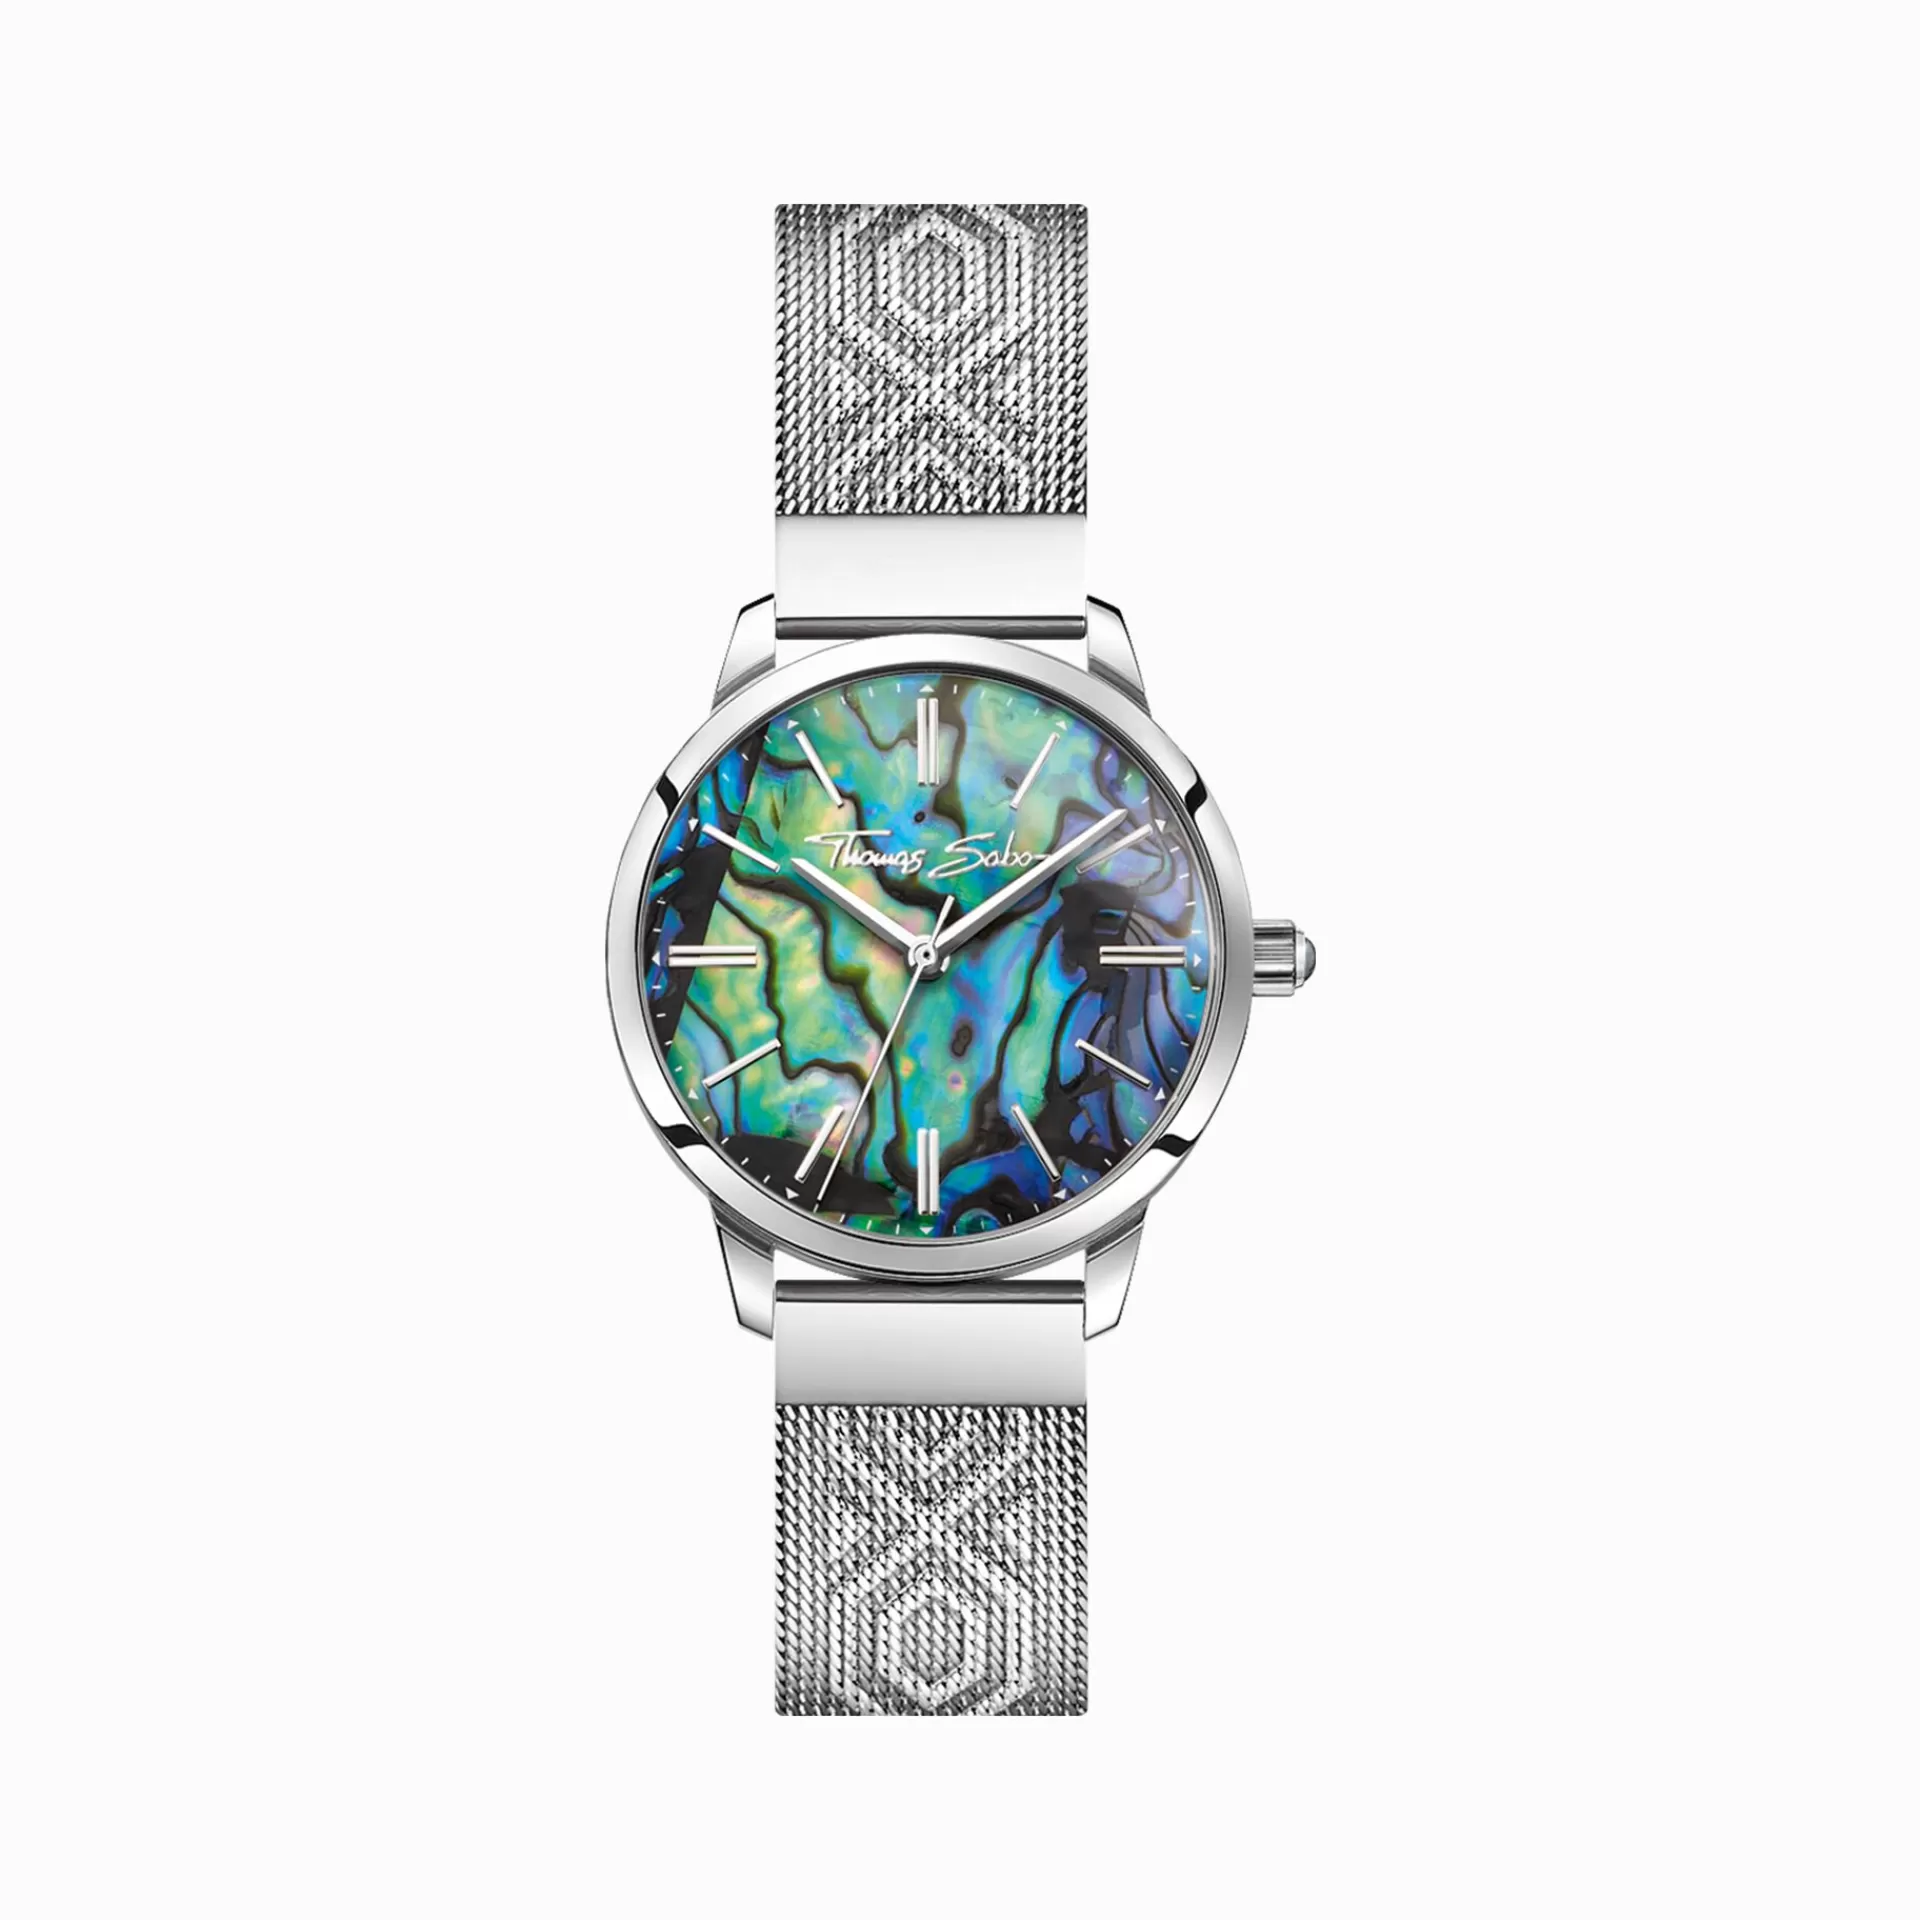 THOMAS SABO Klockor | Klockor för damer<DAMKLOCKA ARIZONA SPIRIT ABALONE silverfargad, blå, grön, turkos